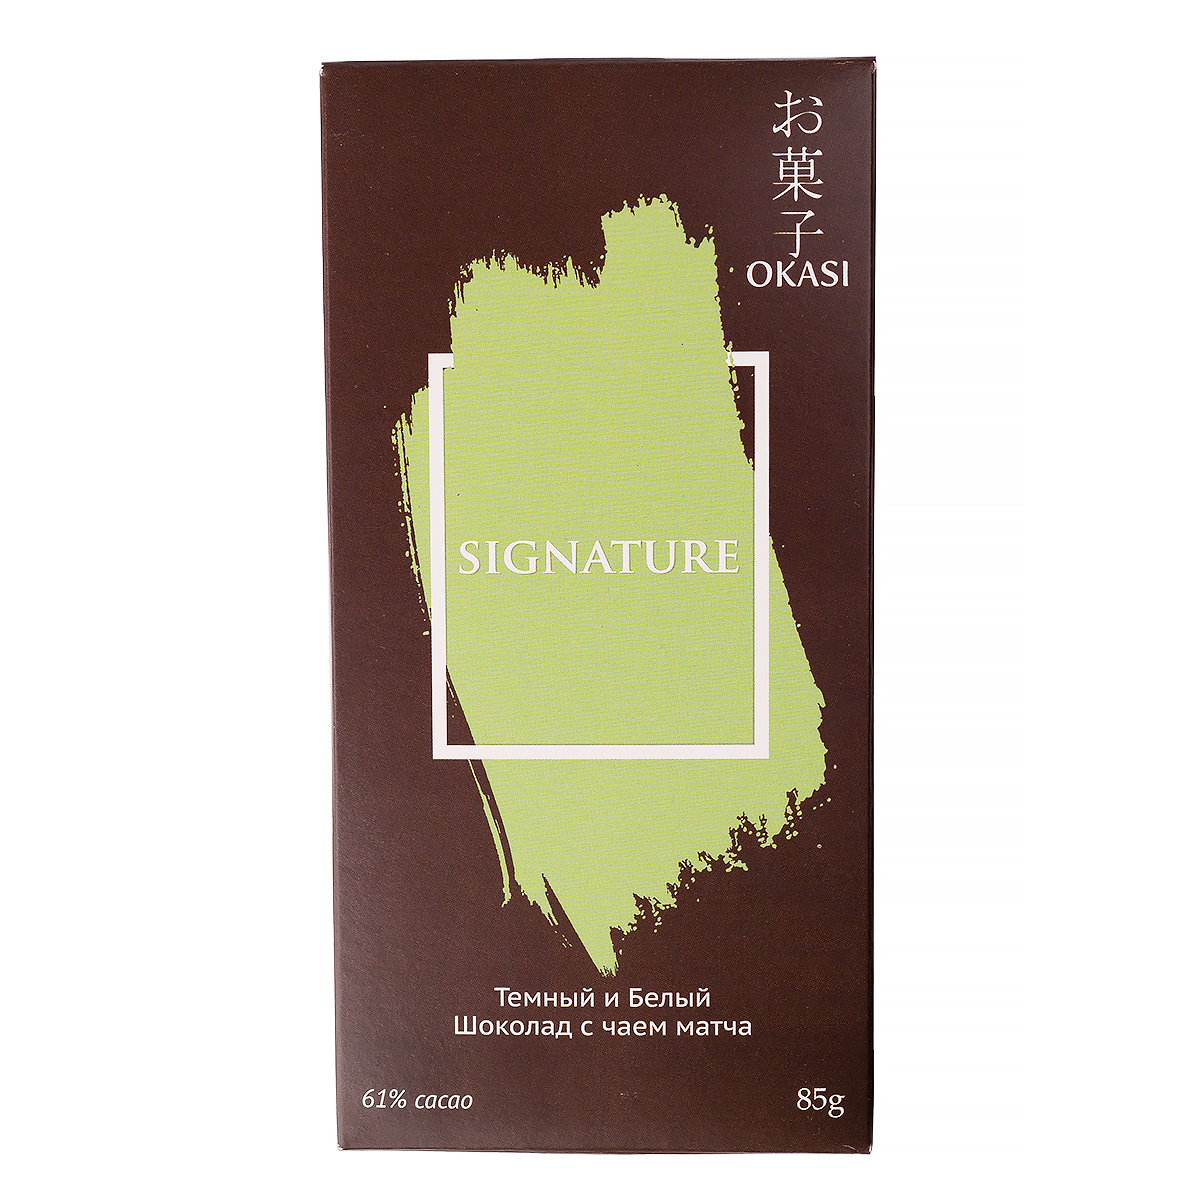 Шоколад темный и белый с чаем матча, Okasi Signature, 61% cacao, 85 г